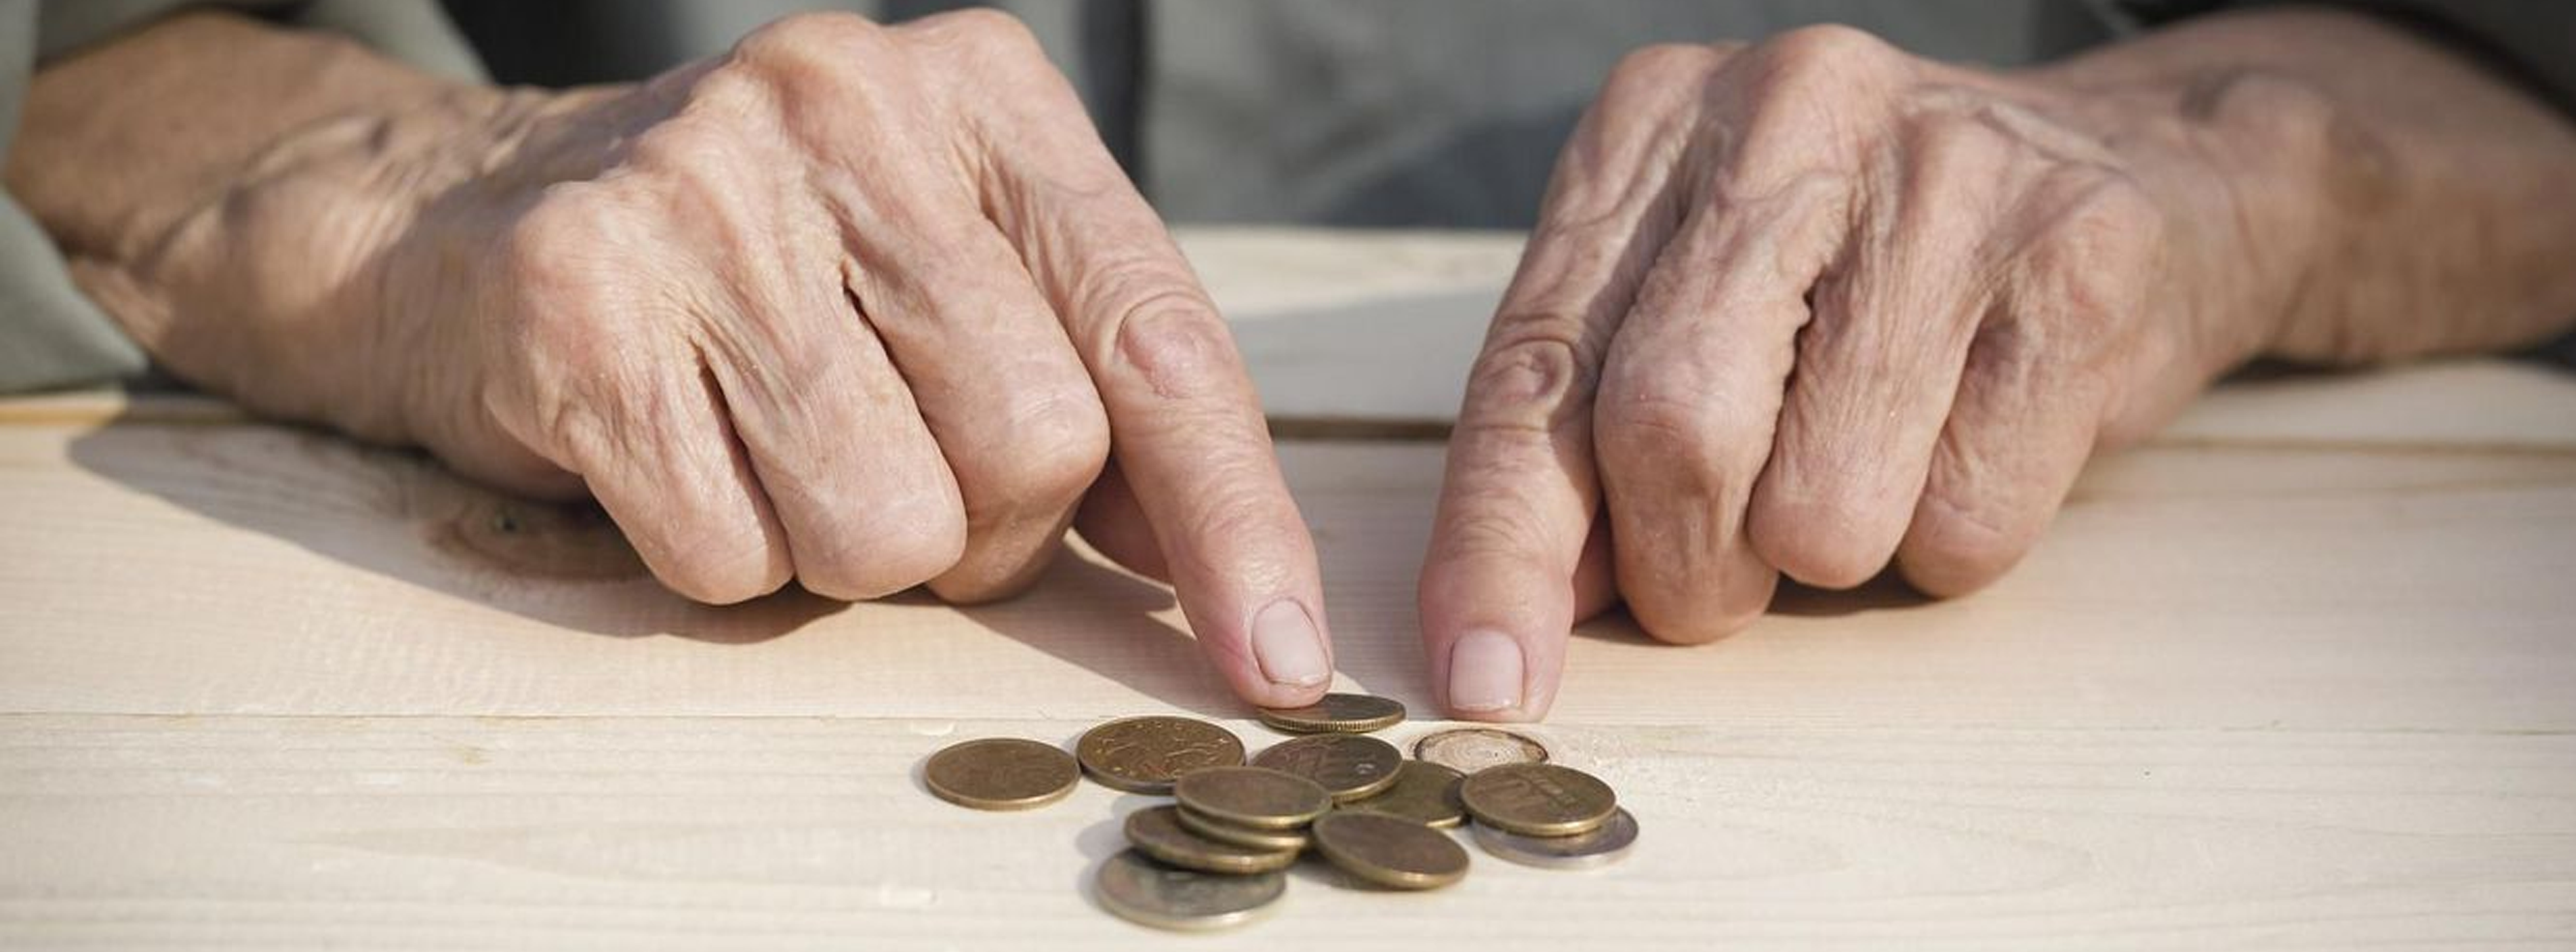 Особенности процедуры банкротства пенсионеров